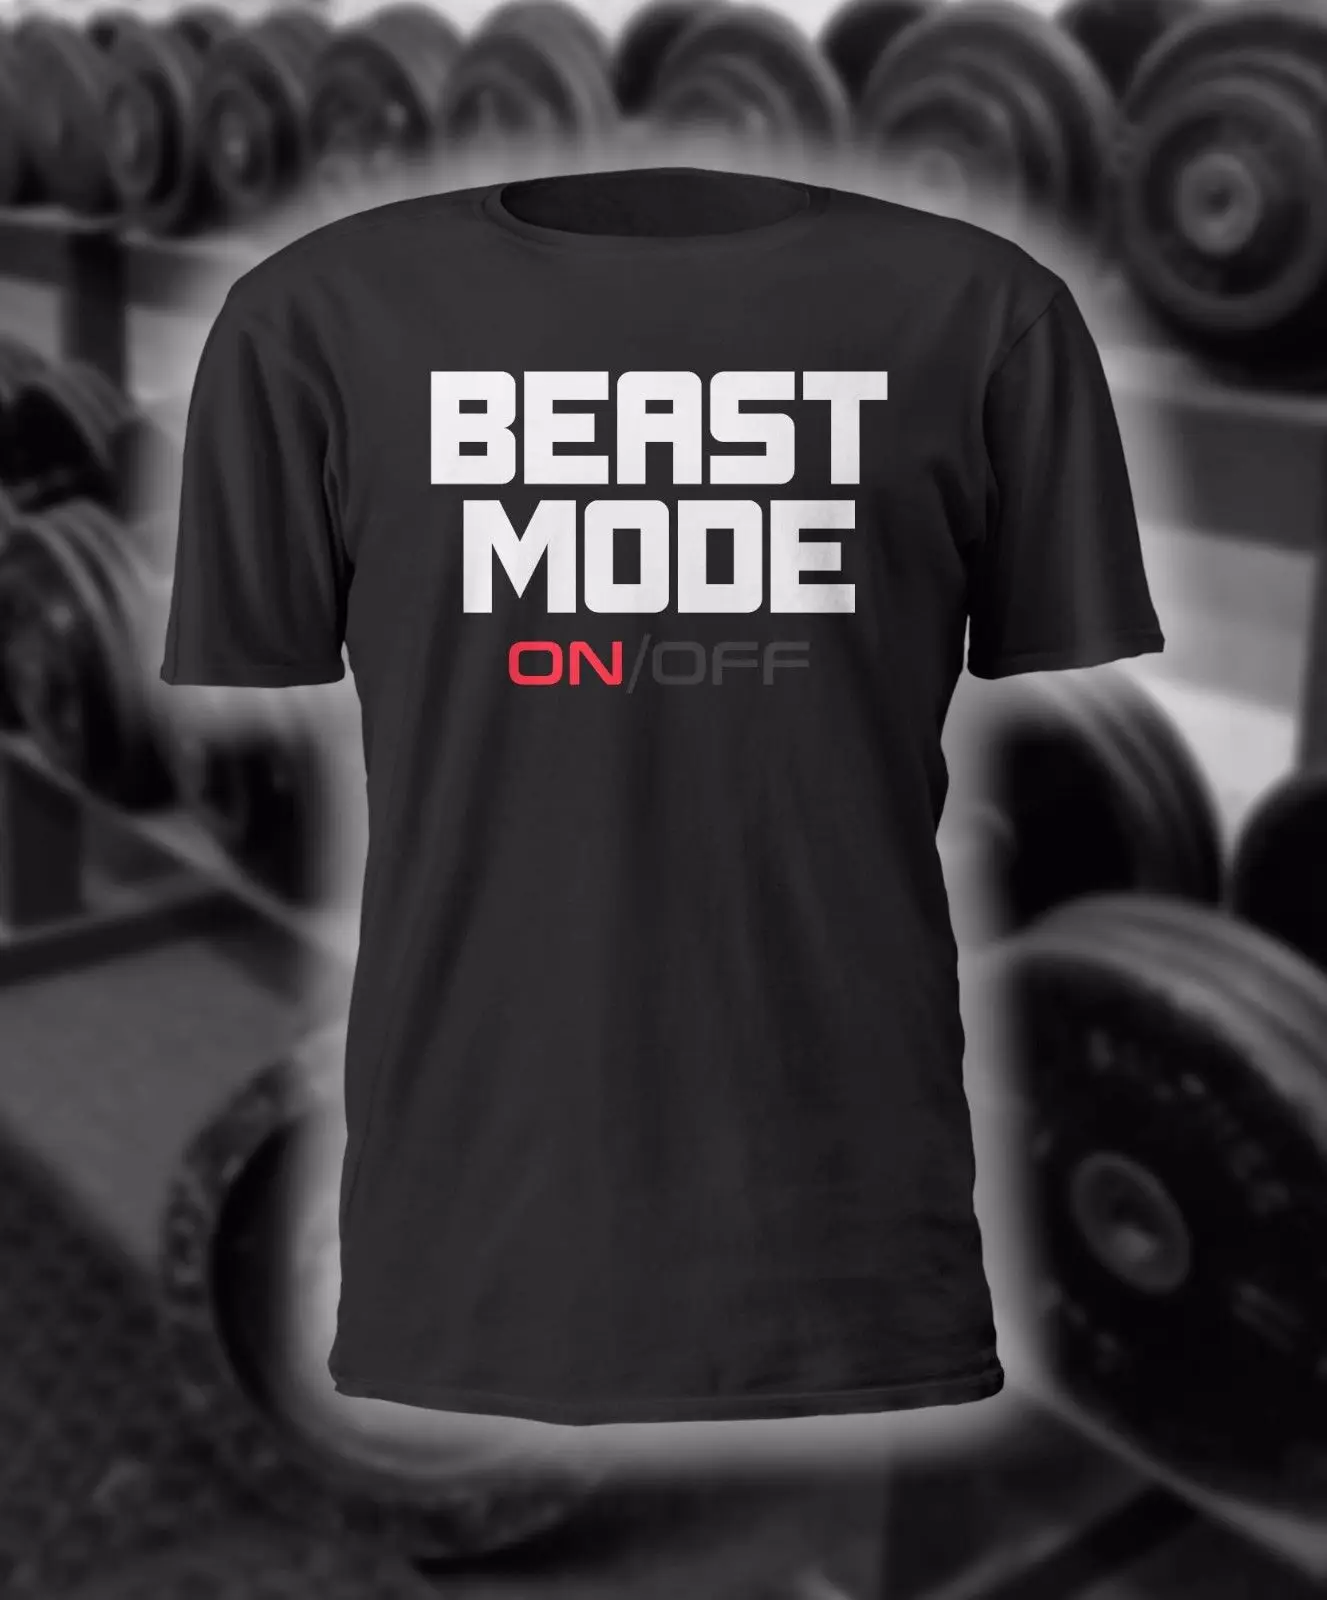 Летняя забавная Мужская футболка BEAST MODE(ON)/OFF рубашка для занятий спортом лифтинг Powerlifting Фитнес Бодибилдинг Забавный